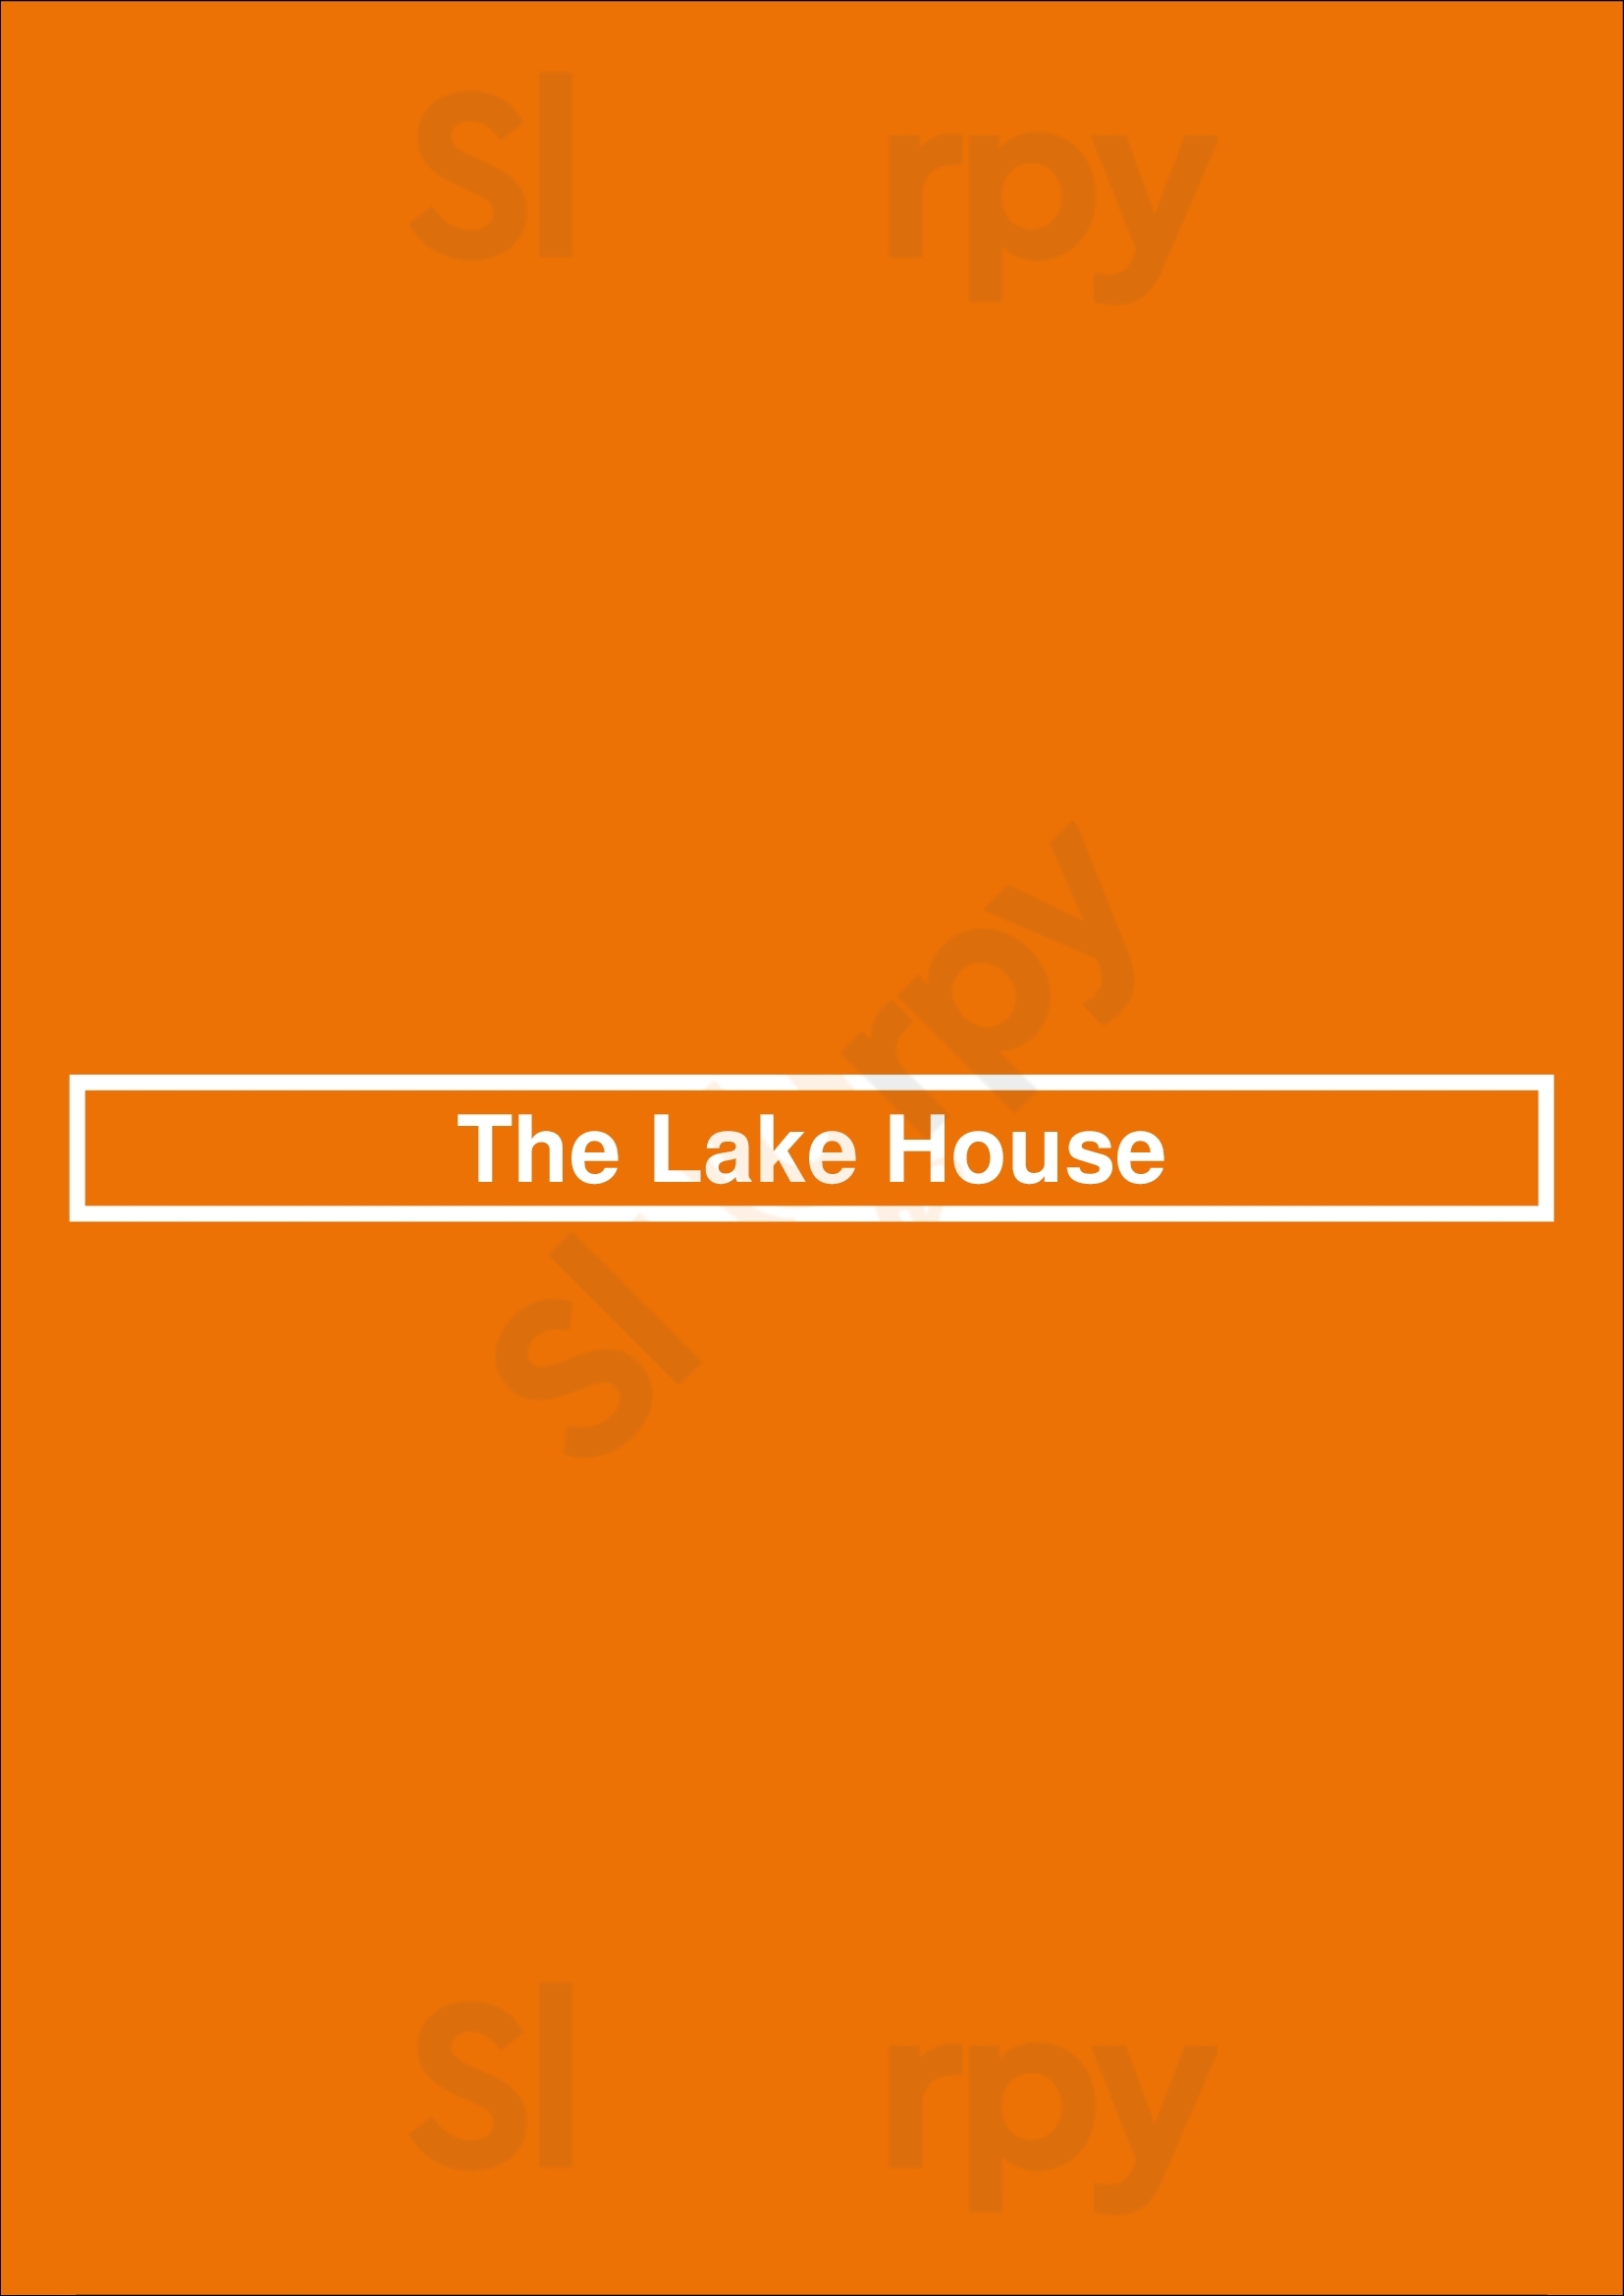 The Lake House Dallas Menu - 1